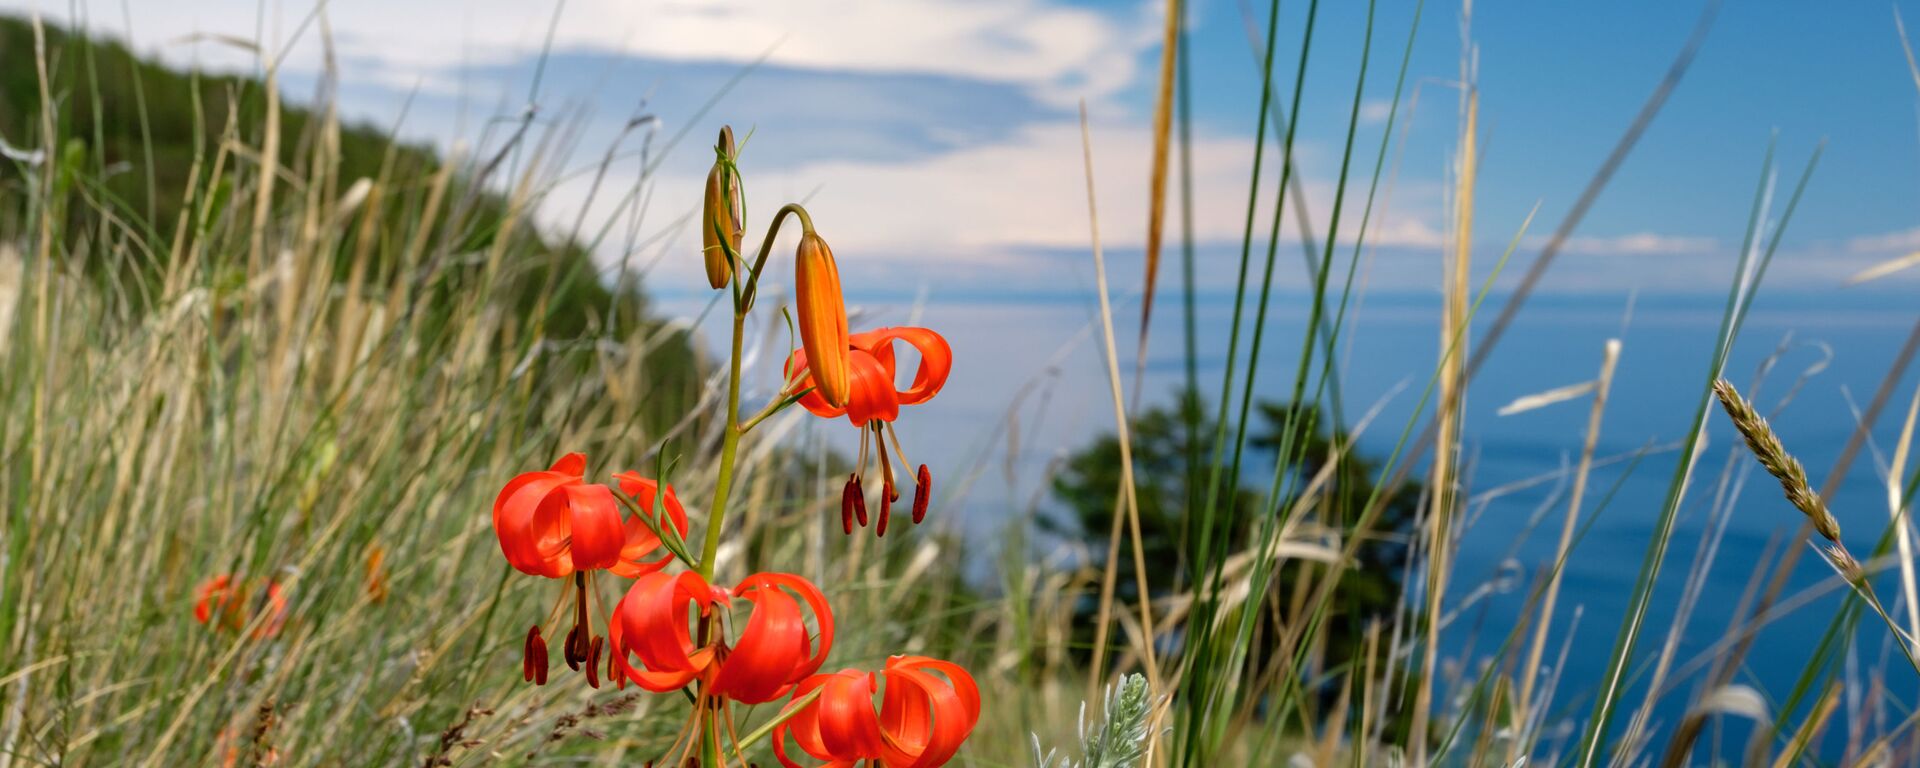 Цветы, растущие на острове Ольхон на озере Байкал в Иркутской области - Sputnik Таджикистан, 1920, 16.04.2021